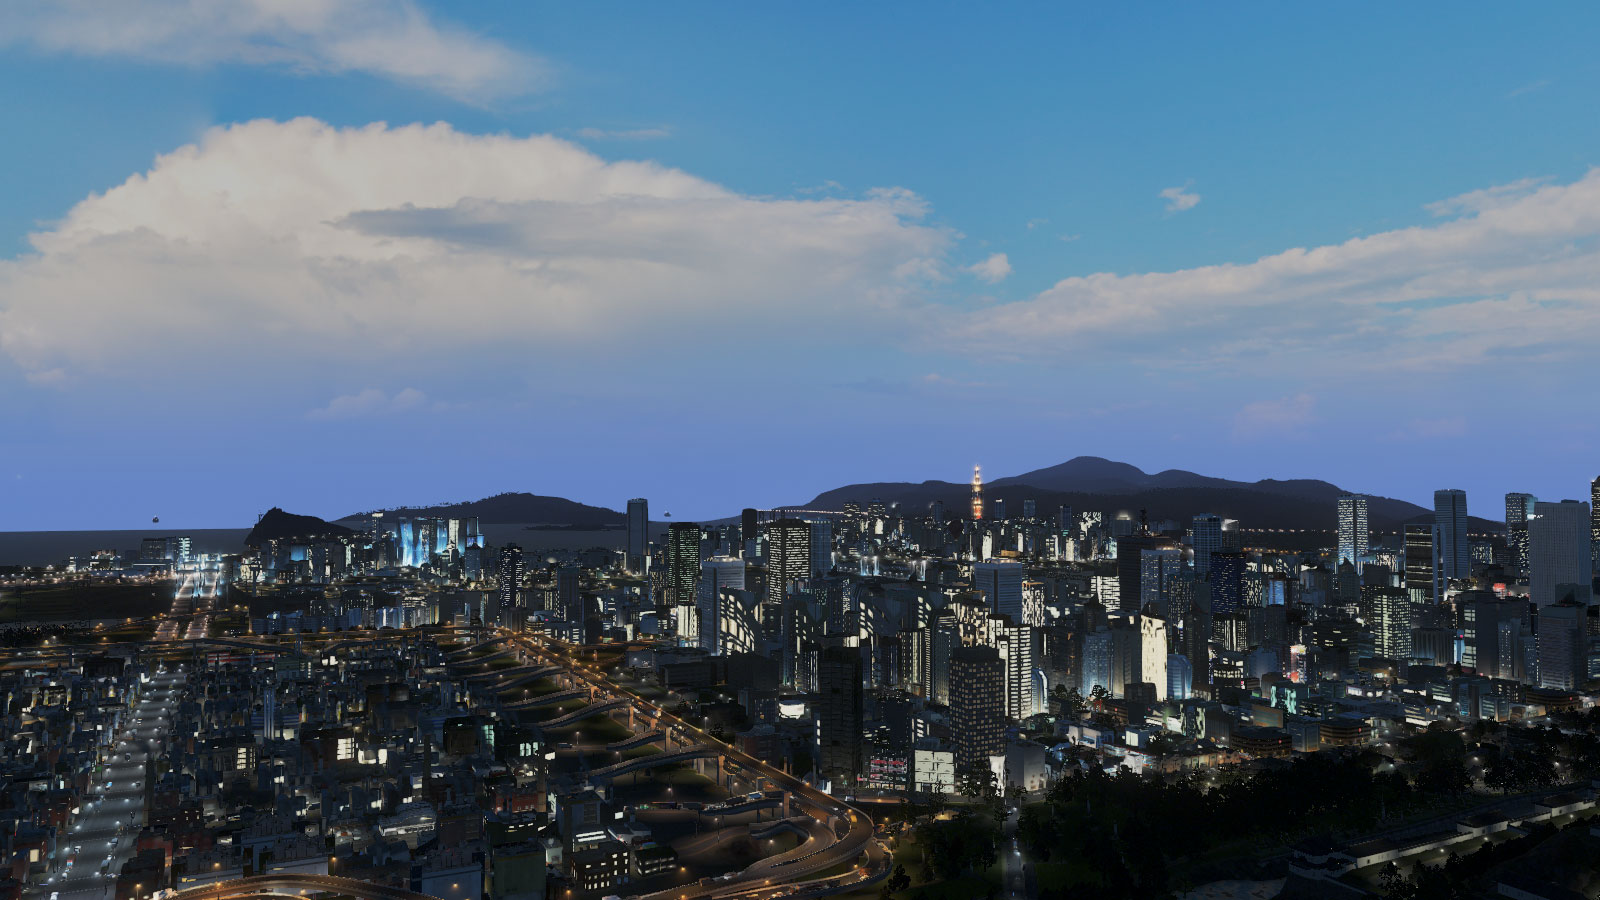 Cities_Skylines